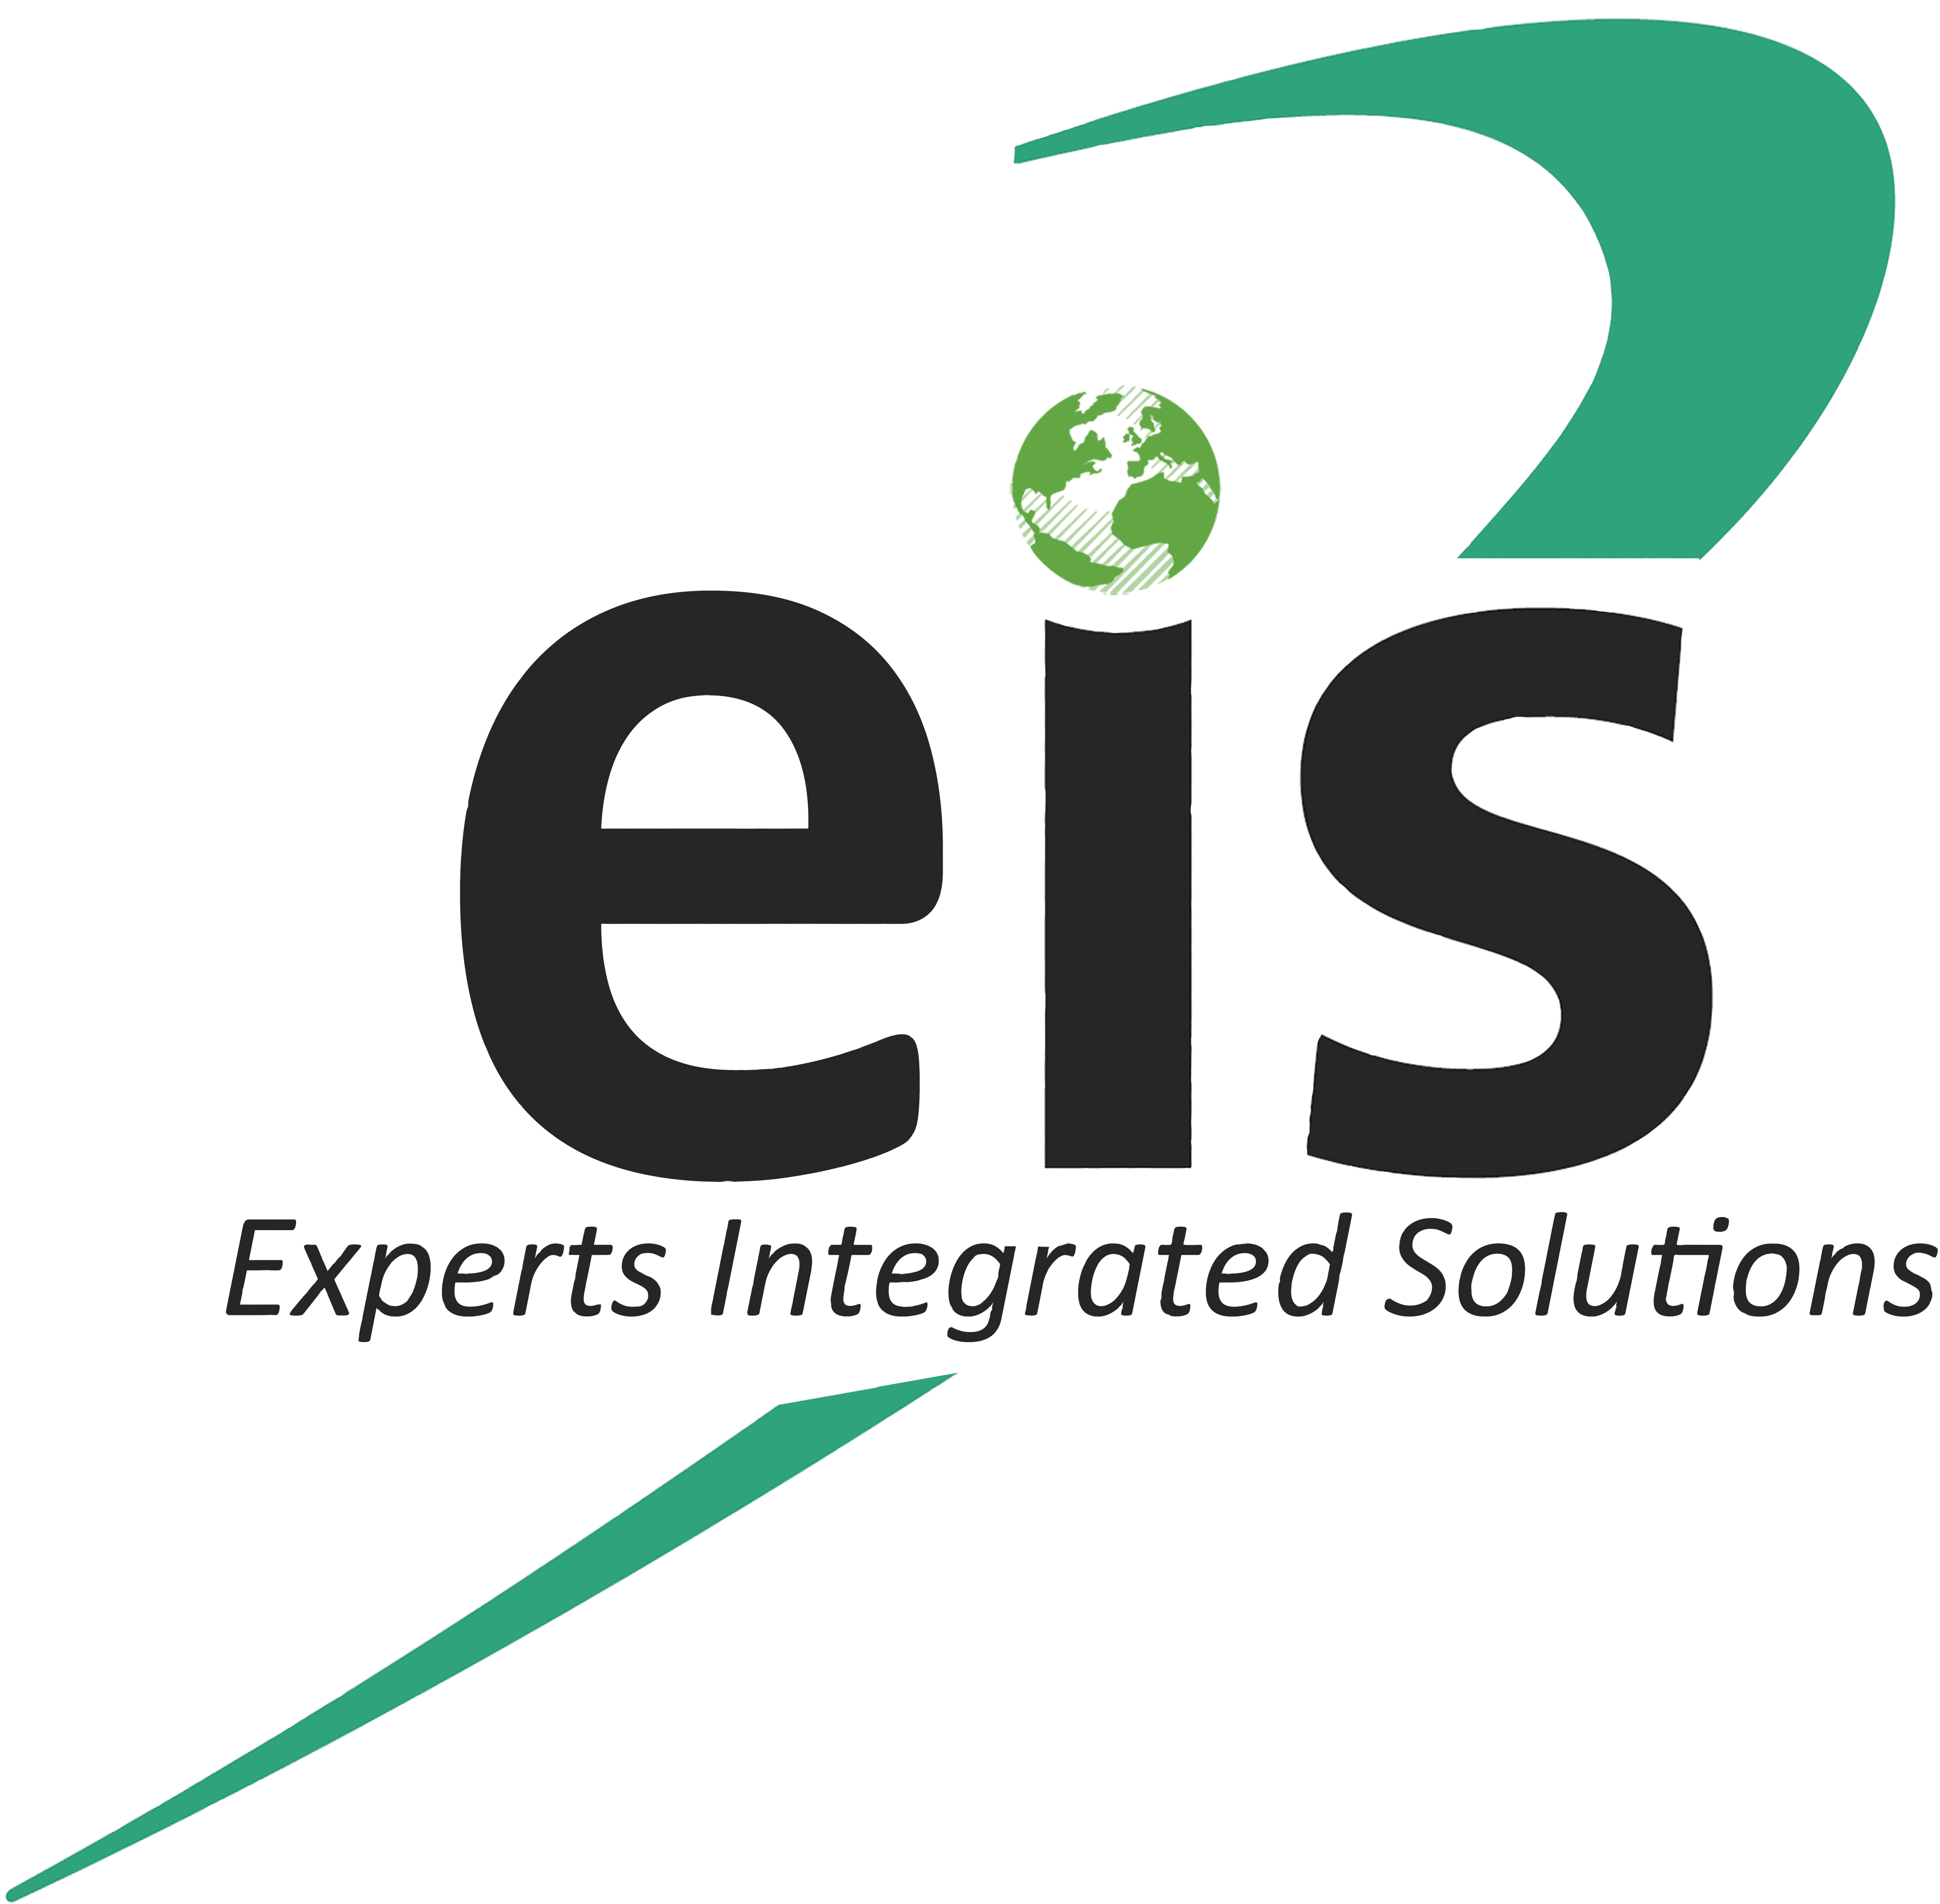 K & M ha un distributore con EIS in Egitto